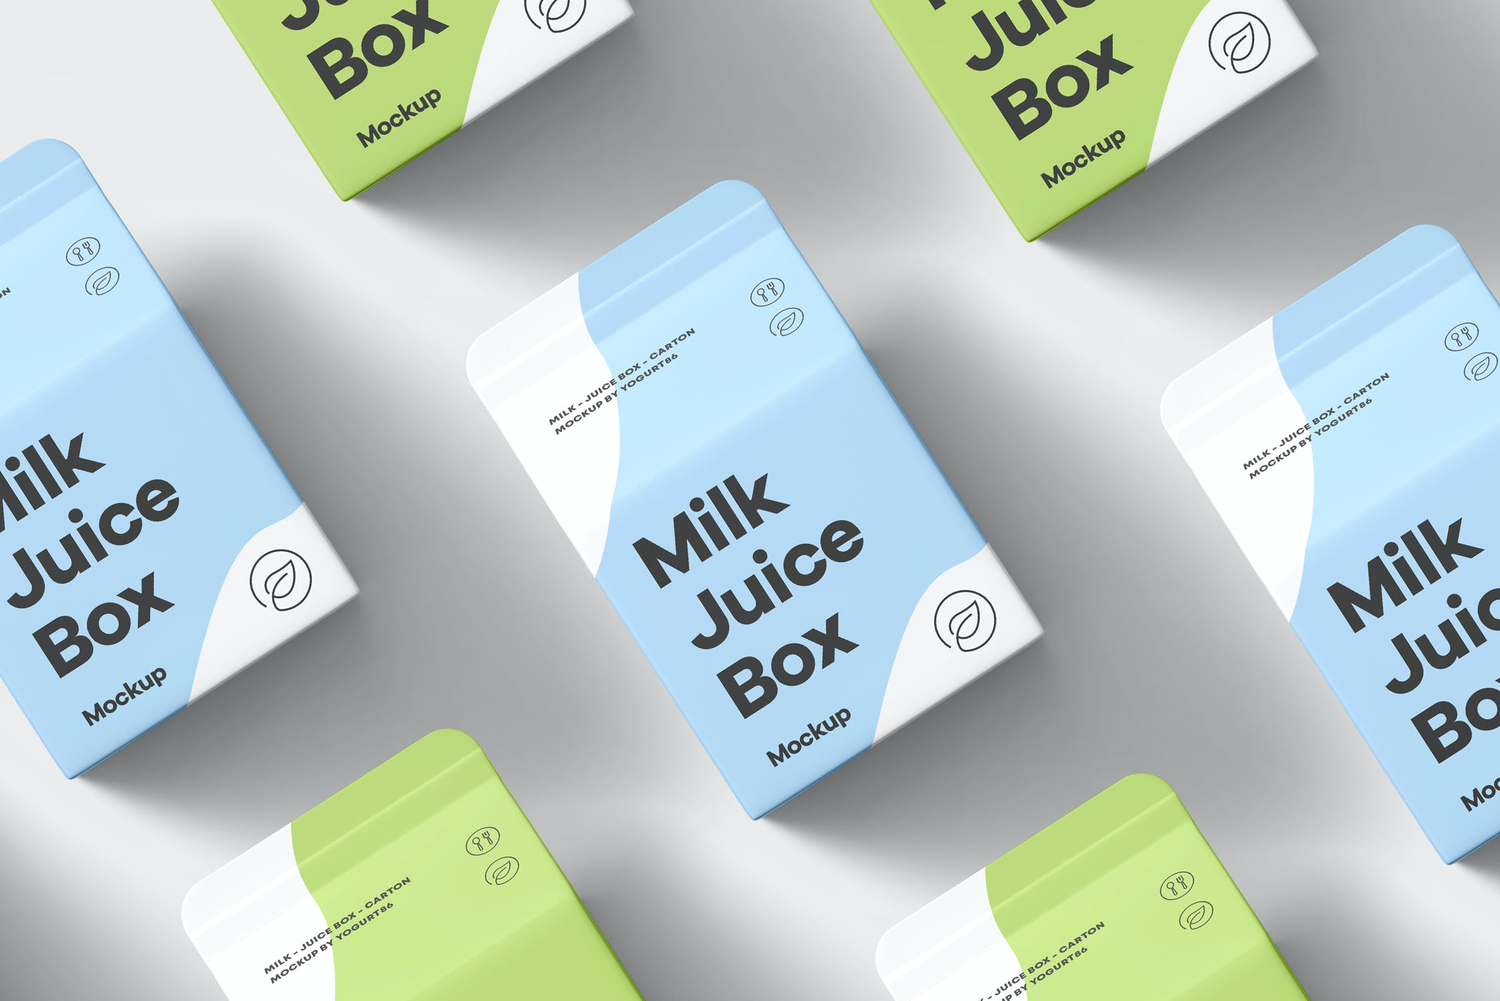 4537 6款牛奶果汁利乐装纸盒包装设计作品贴图ps样机素材展示效果图 Milk Juice Box Mock-up@GOOODME.COM